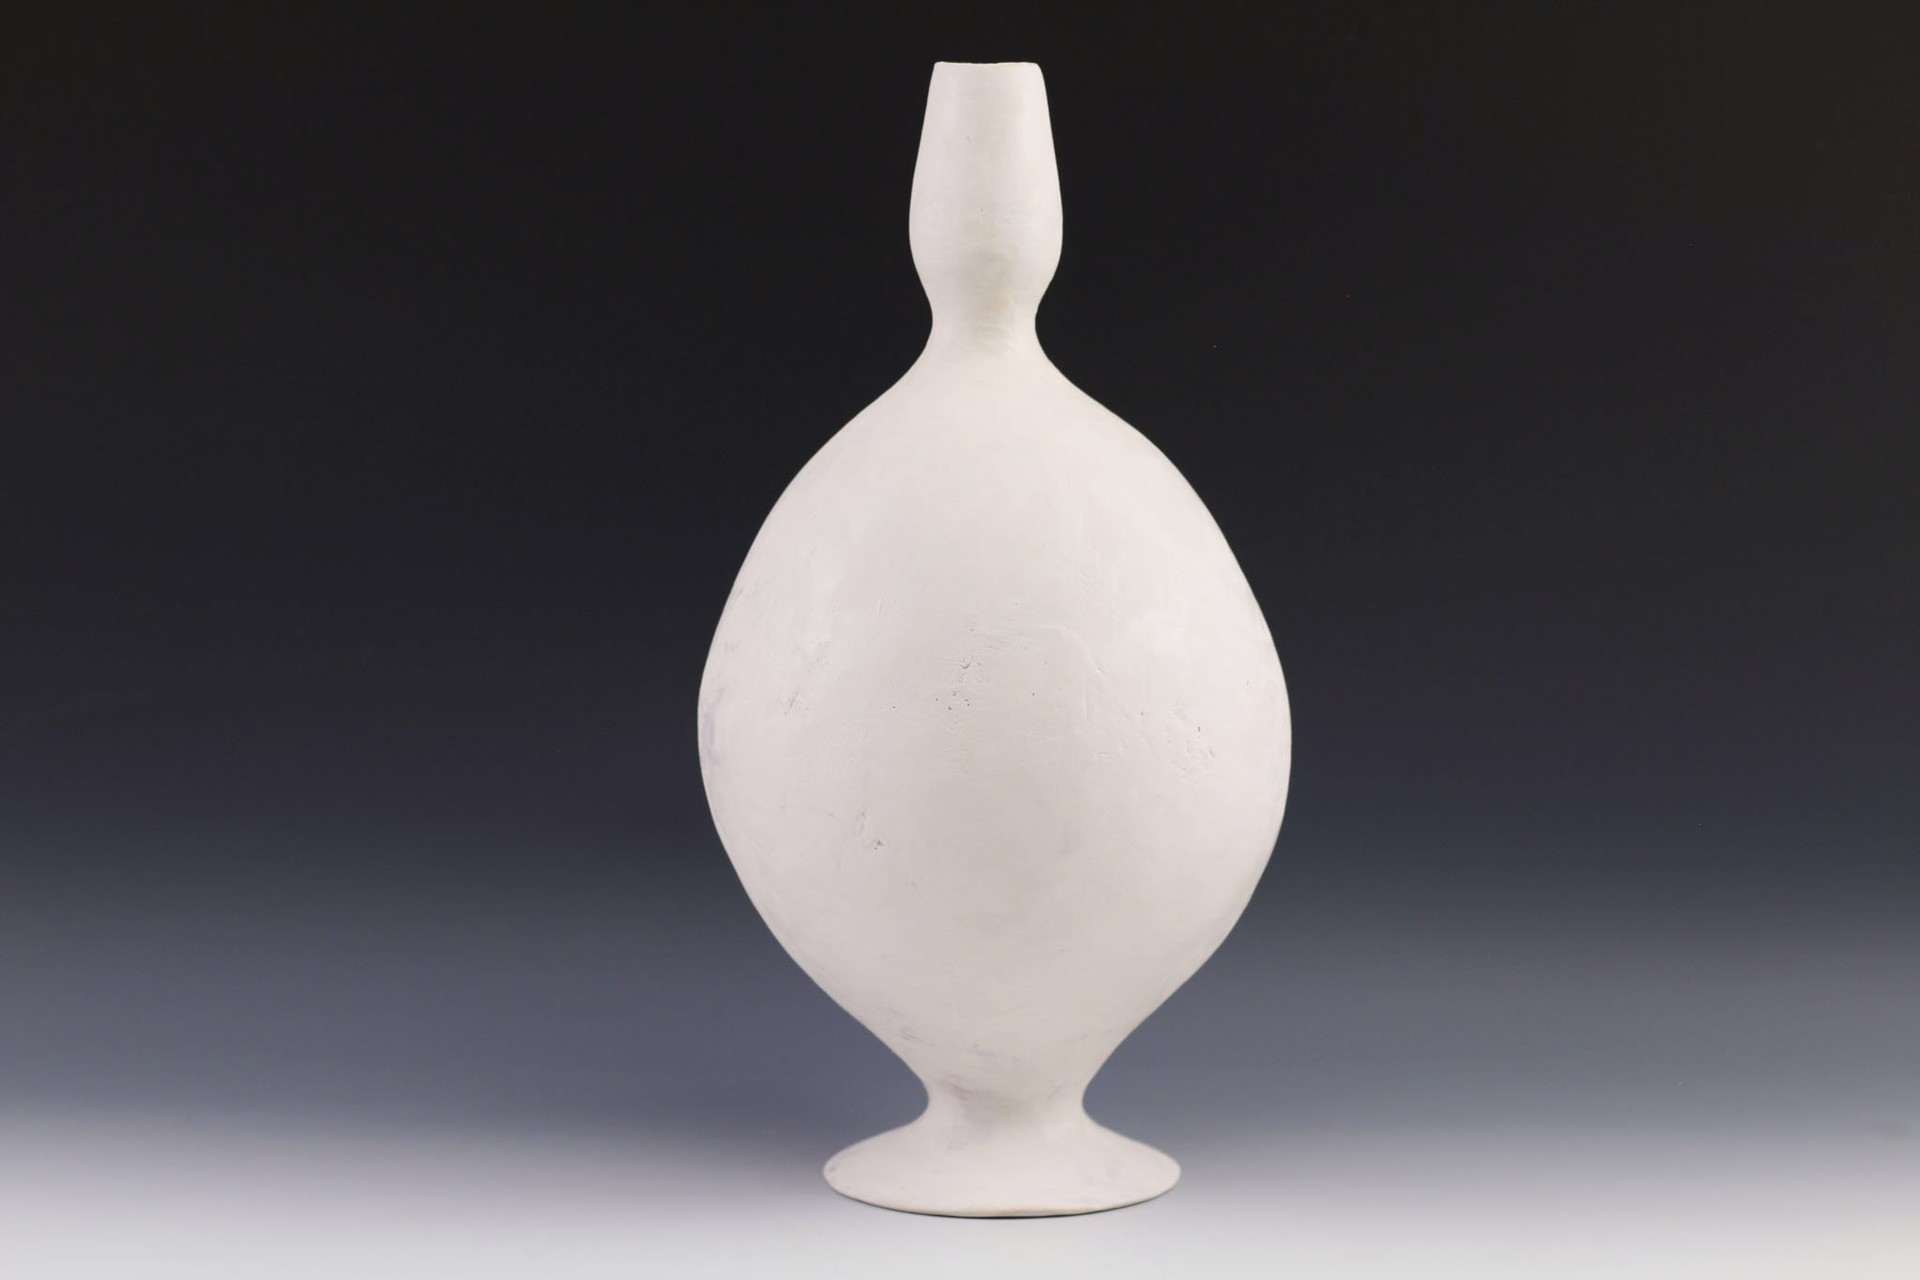 Large Vase by Maggie Jaszczak